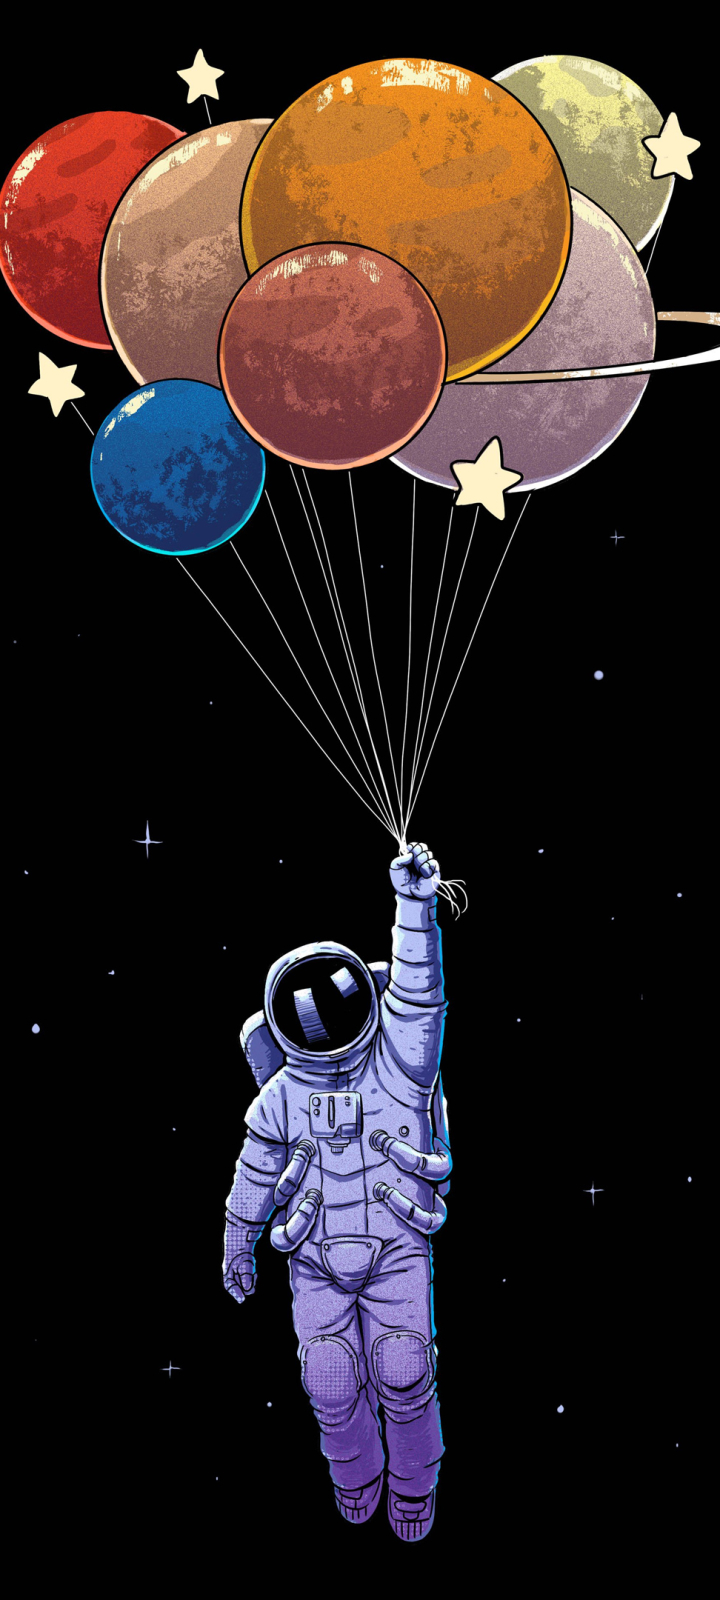 1385728 免費下載壁紙 科幻, 宇航员, 宇航服, 气球 屏保和圖片